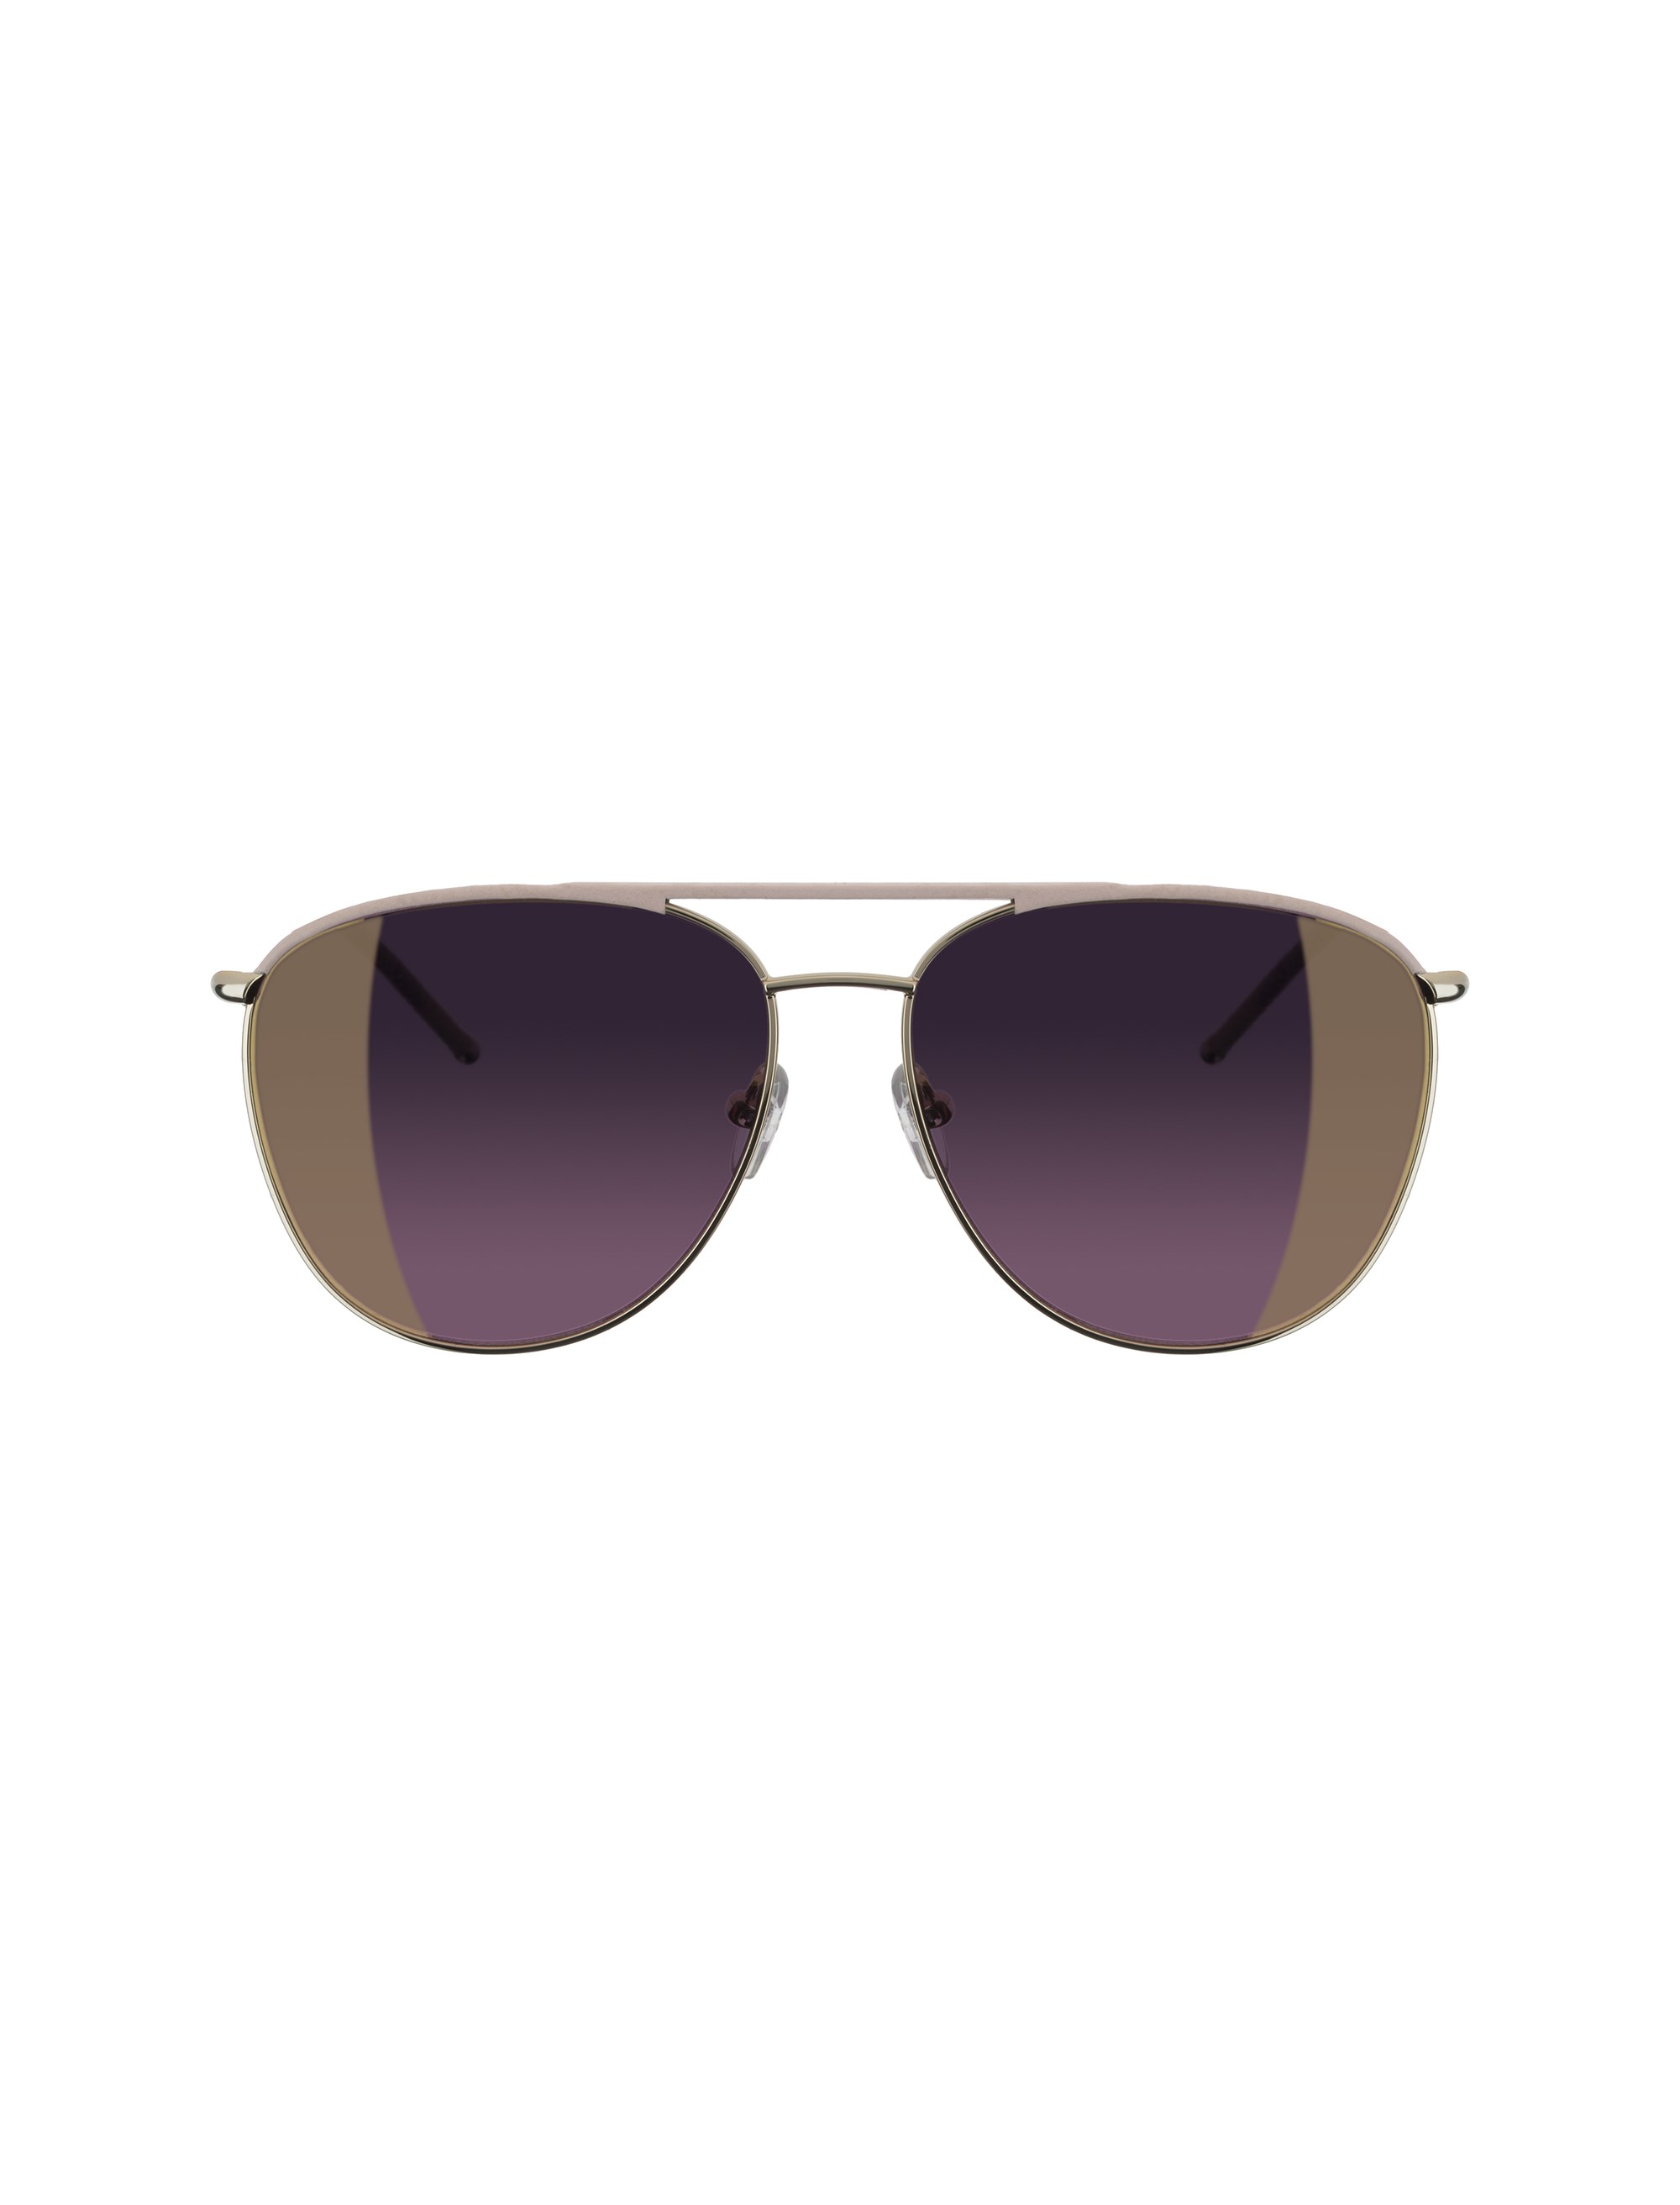 عینک آفتابی خلبانی زنانه - تد بیکر - طلايي و صورتي - 2